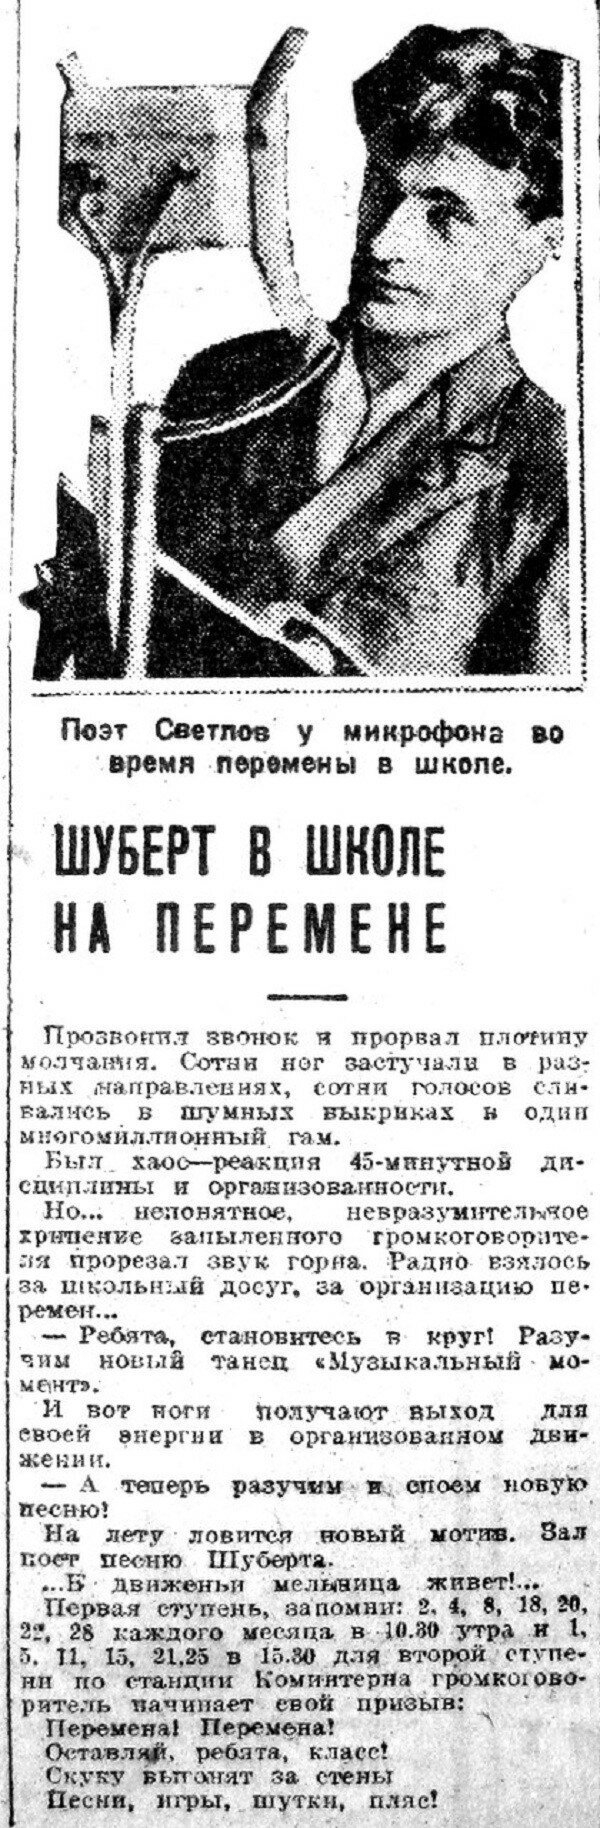 Хроника московской жизни. 1930-е. 13 сентября